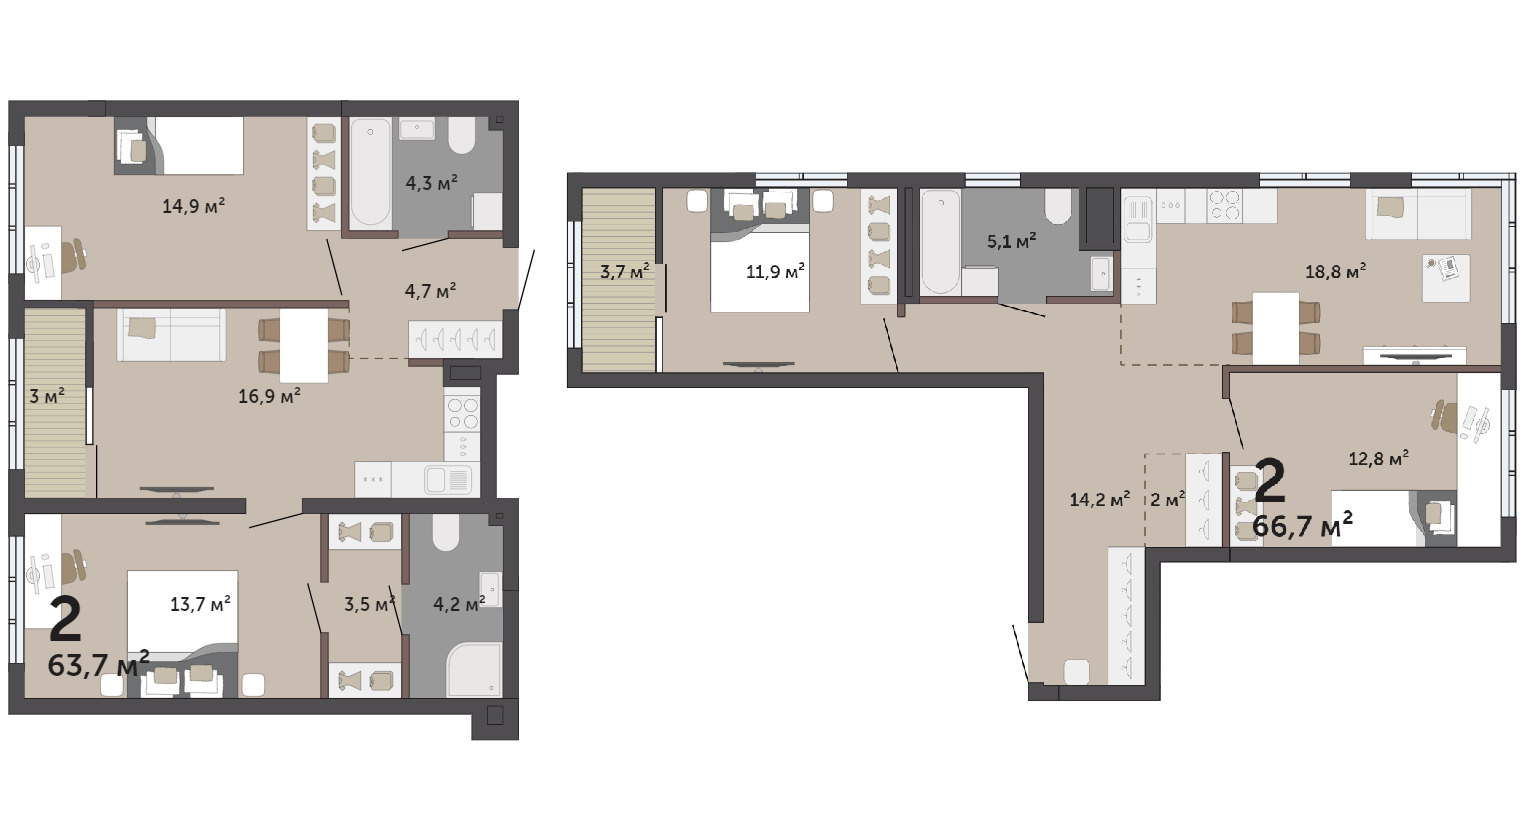 В квартирах семейного формата появляется выбор между планировкой с мастер-спальней и детскими или с обычными комнатами